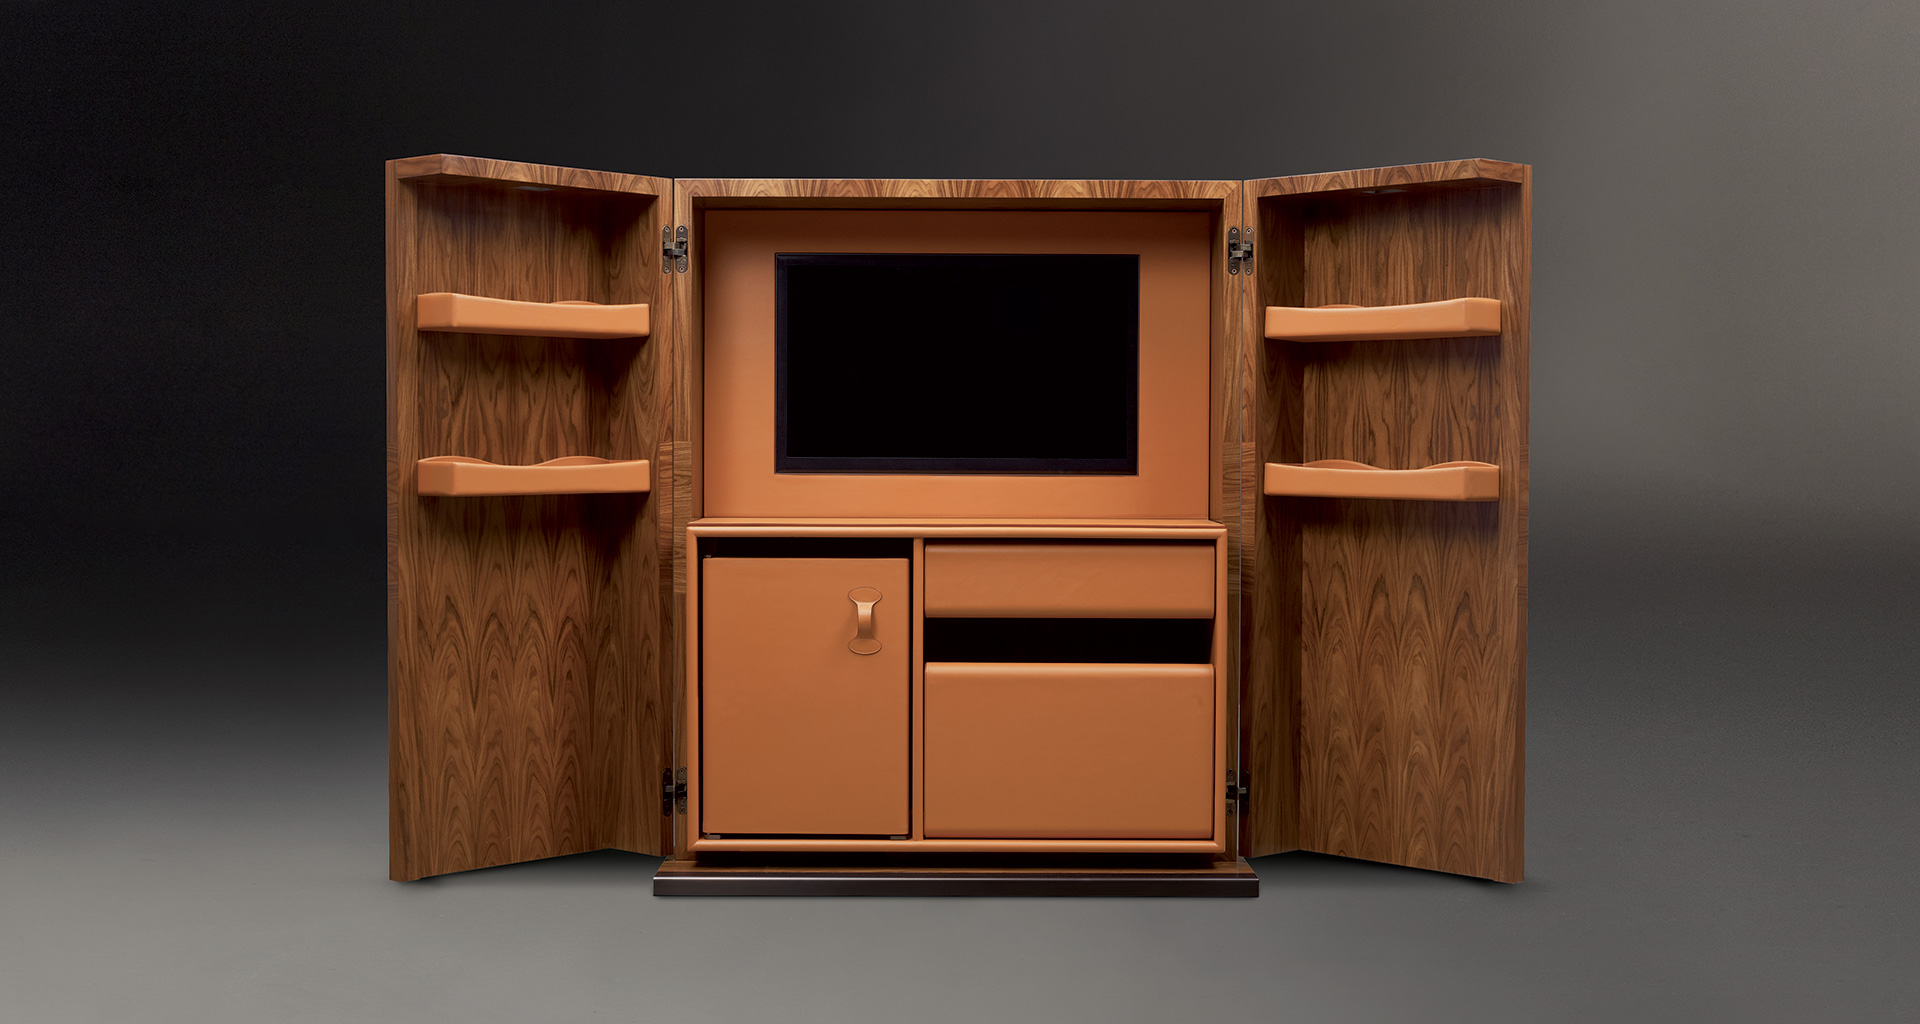 Interno di Bacco, mobile-bar in legno con un interno accessoriato e base, profili e maniglie in bronzo, del catalogo di Promemoria | Promemoria